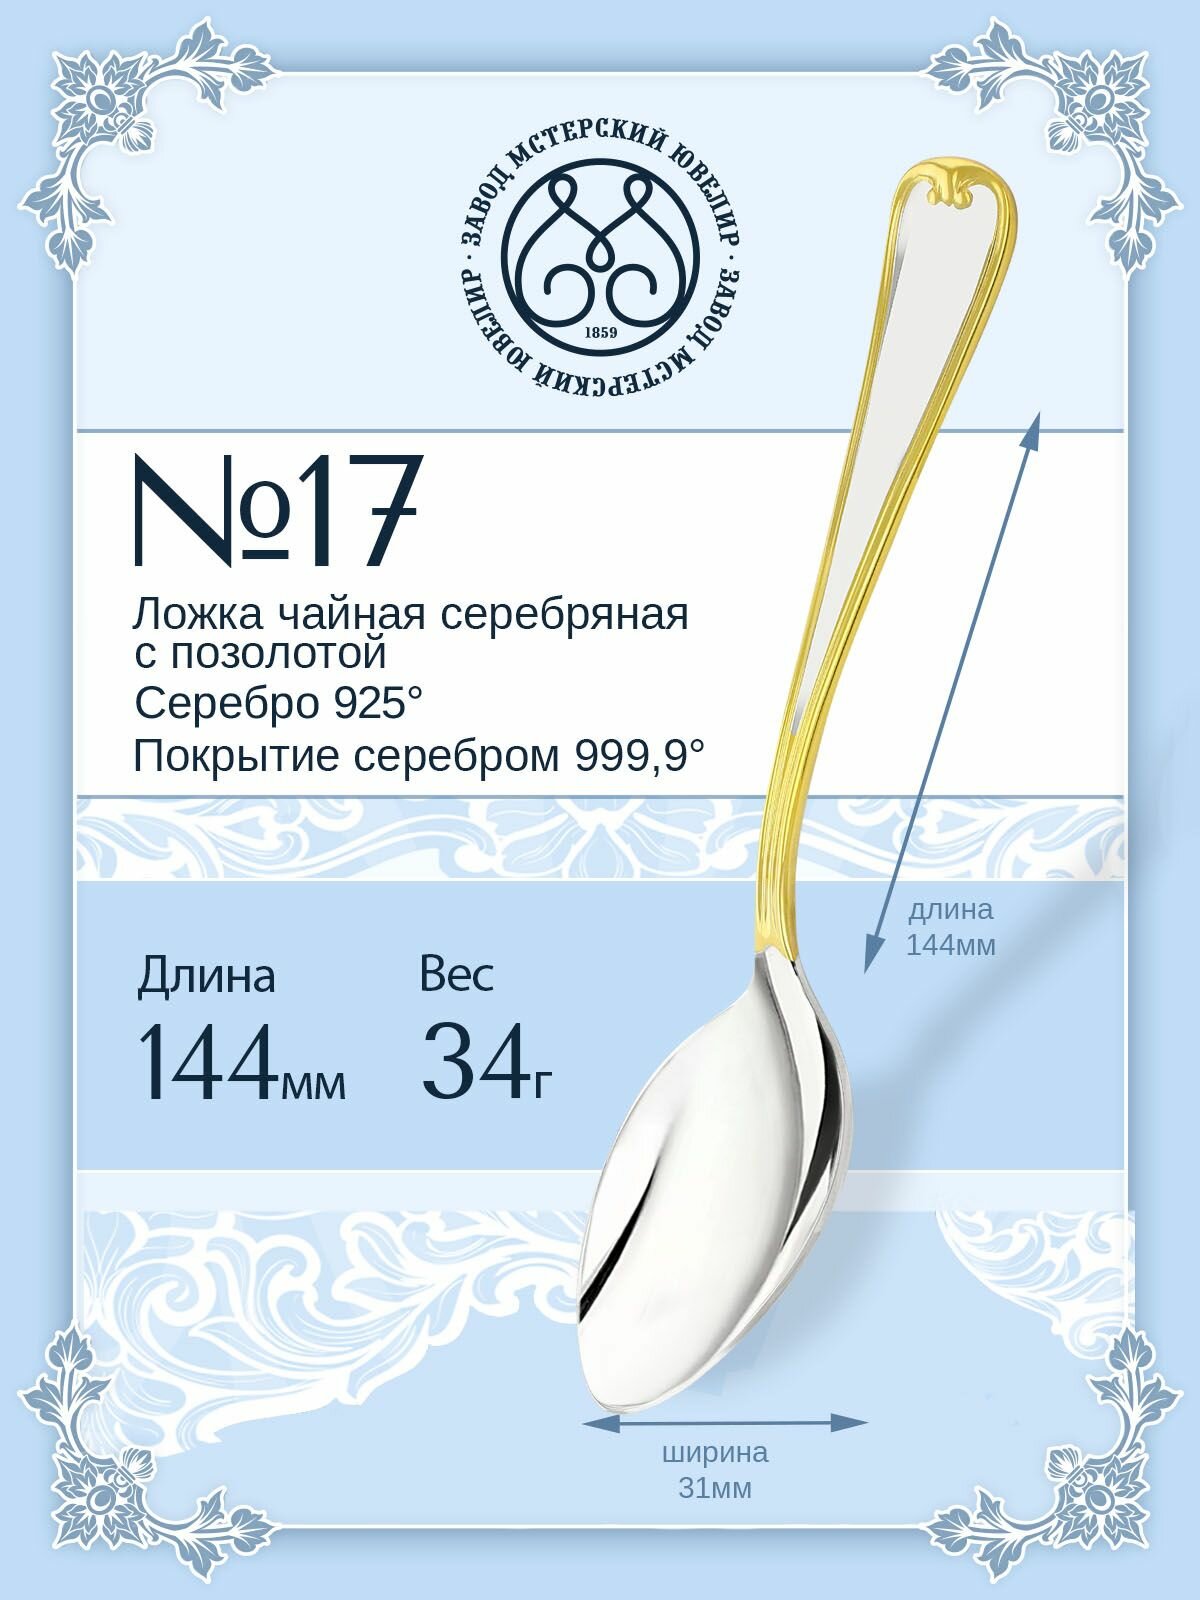 Ложка серебряная Мстерский ювелир чайная №17